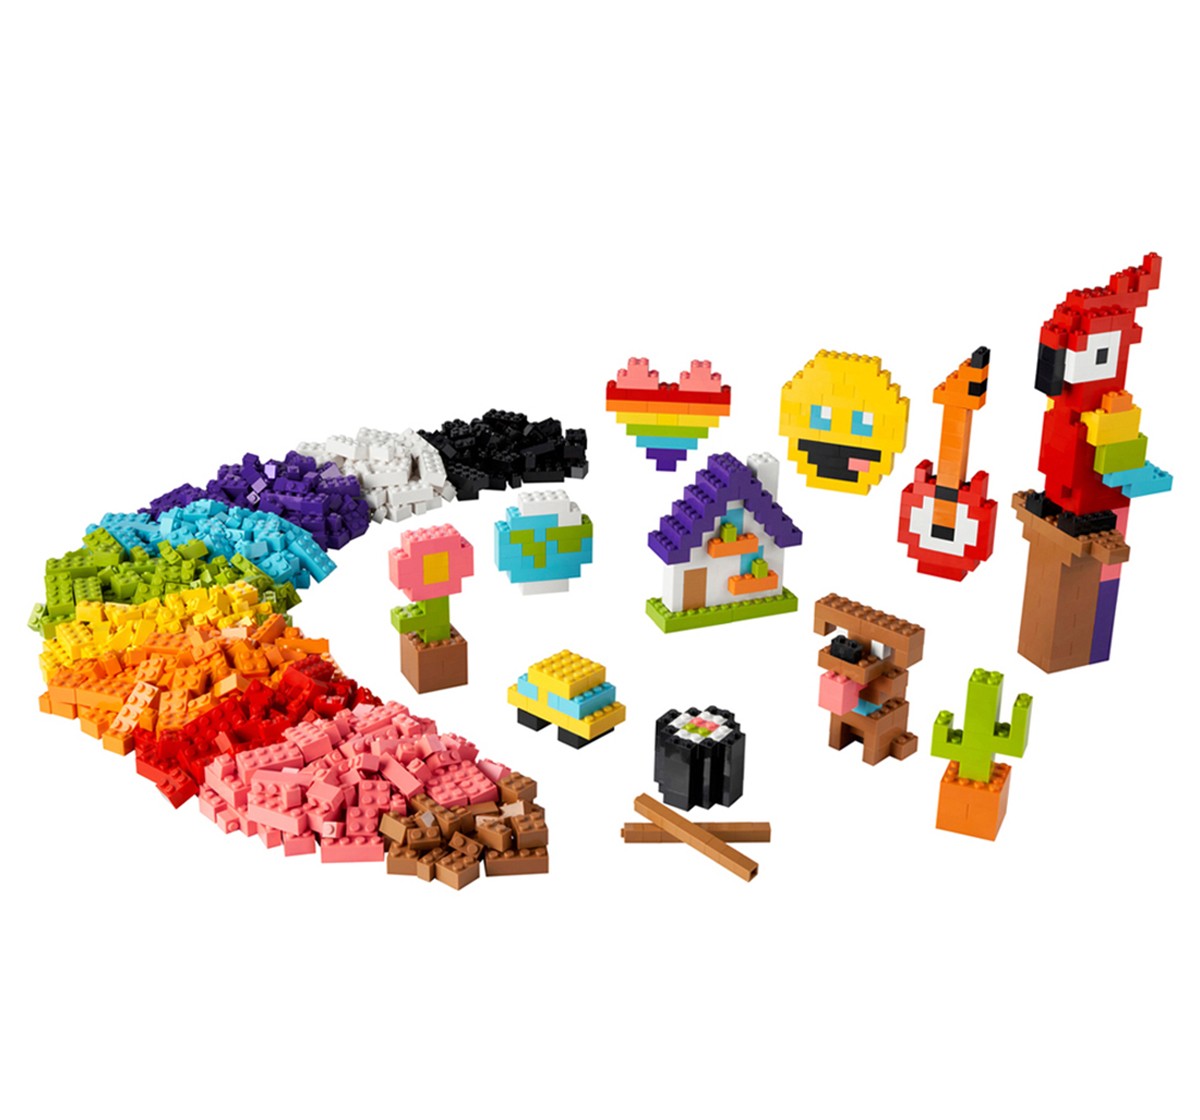 LEGO Classic Lots of Bricks 11030 Building Toy Set 1,000 Pieces Multicolour 5Y+